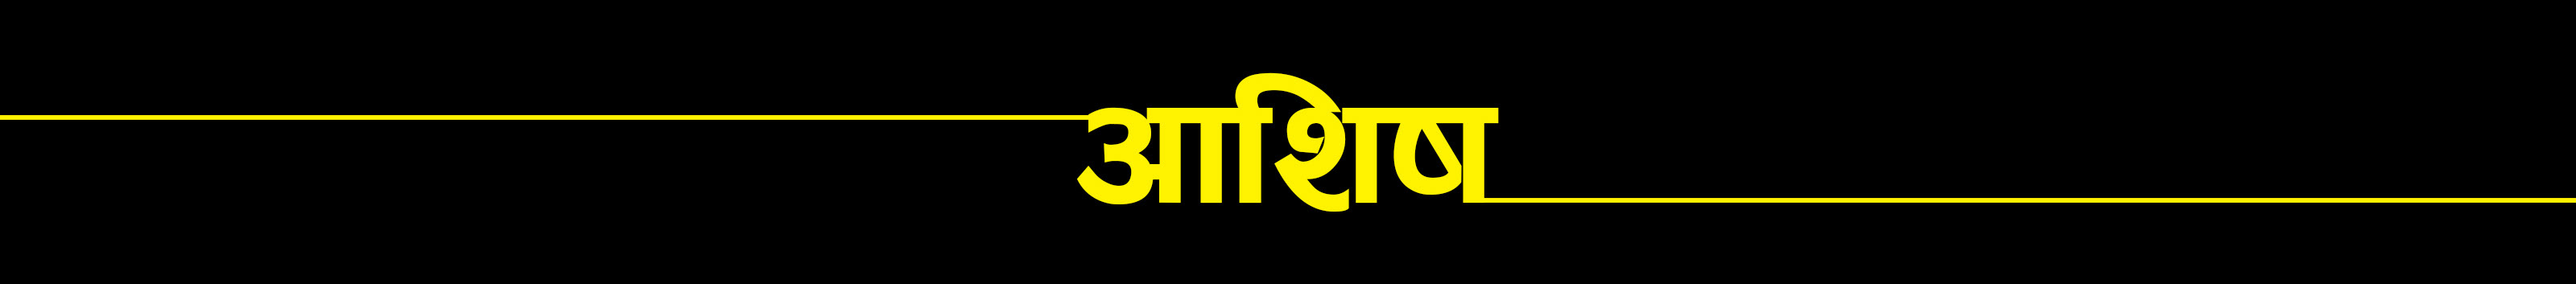 Баннер профиля Ashish Shrestha